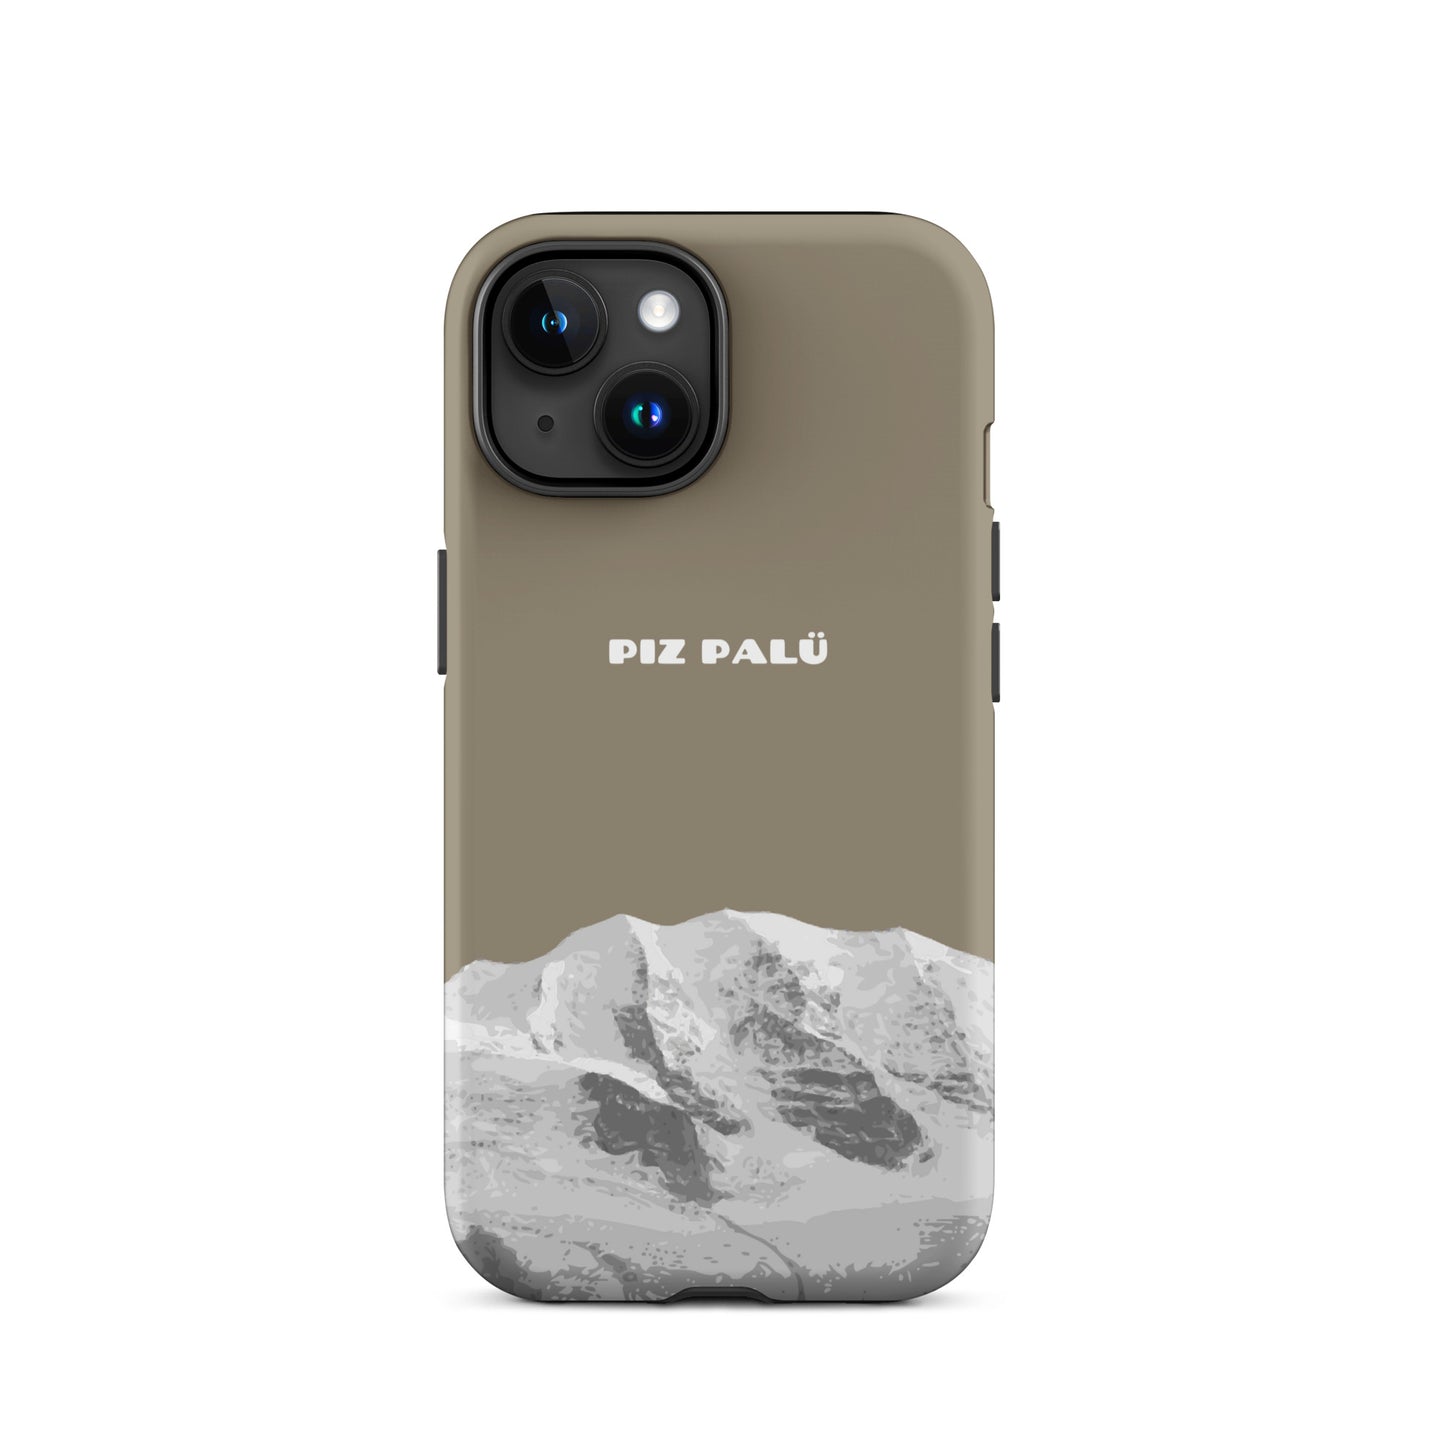 Hülle für das iPhone 15 von Apple in der Farbe Graubrau, dass den Piz Palü in Graubünden zeigt.